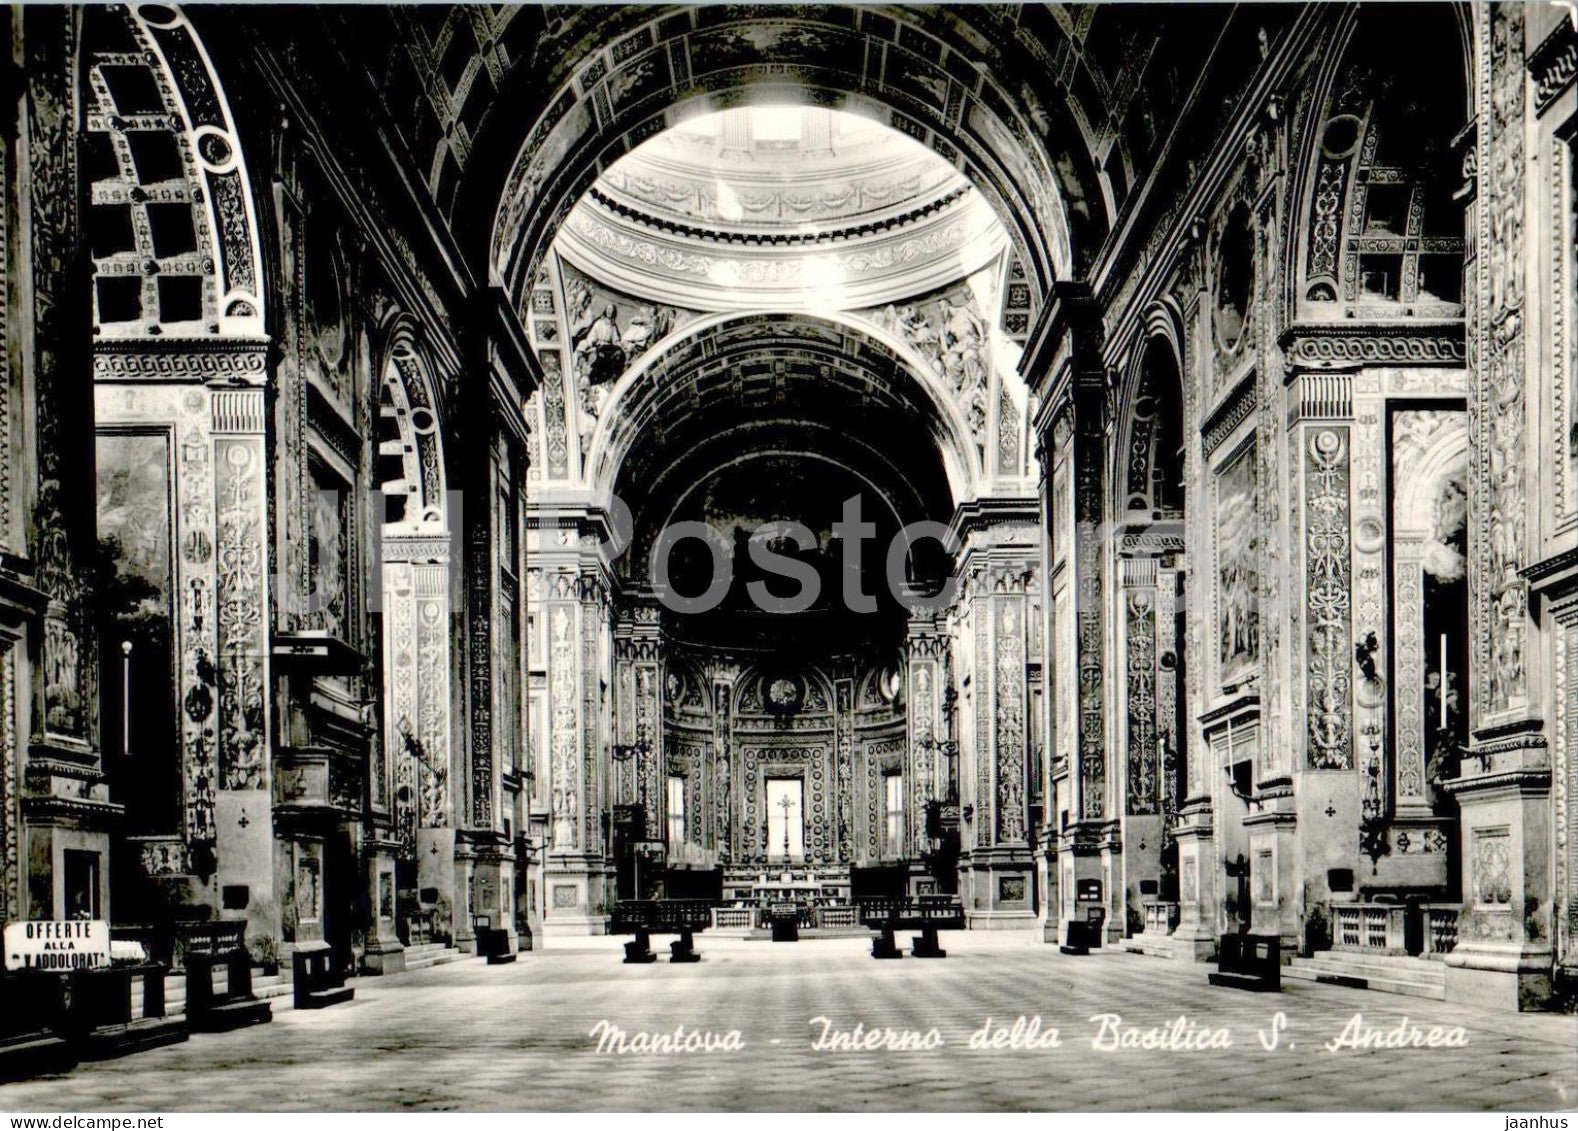 Mantova - Mantua - Interno della Basilica S Andrea - Basilic of St Andrew - cathedral - 2284 - Italy - unused - JH Postcards